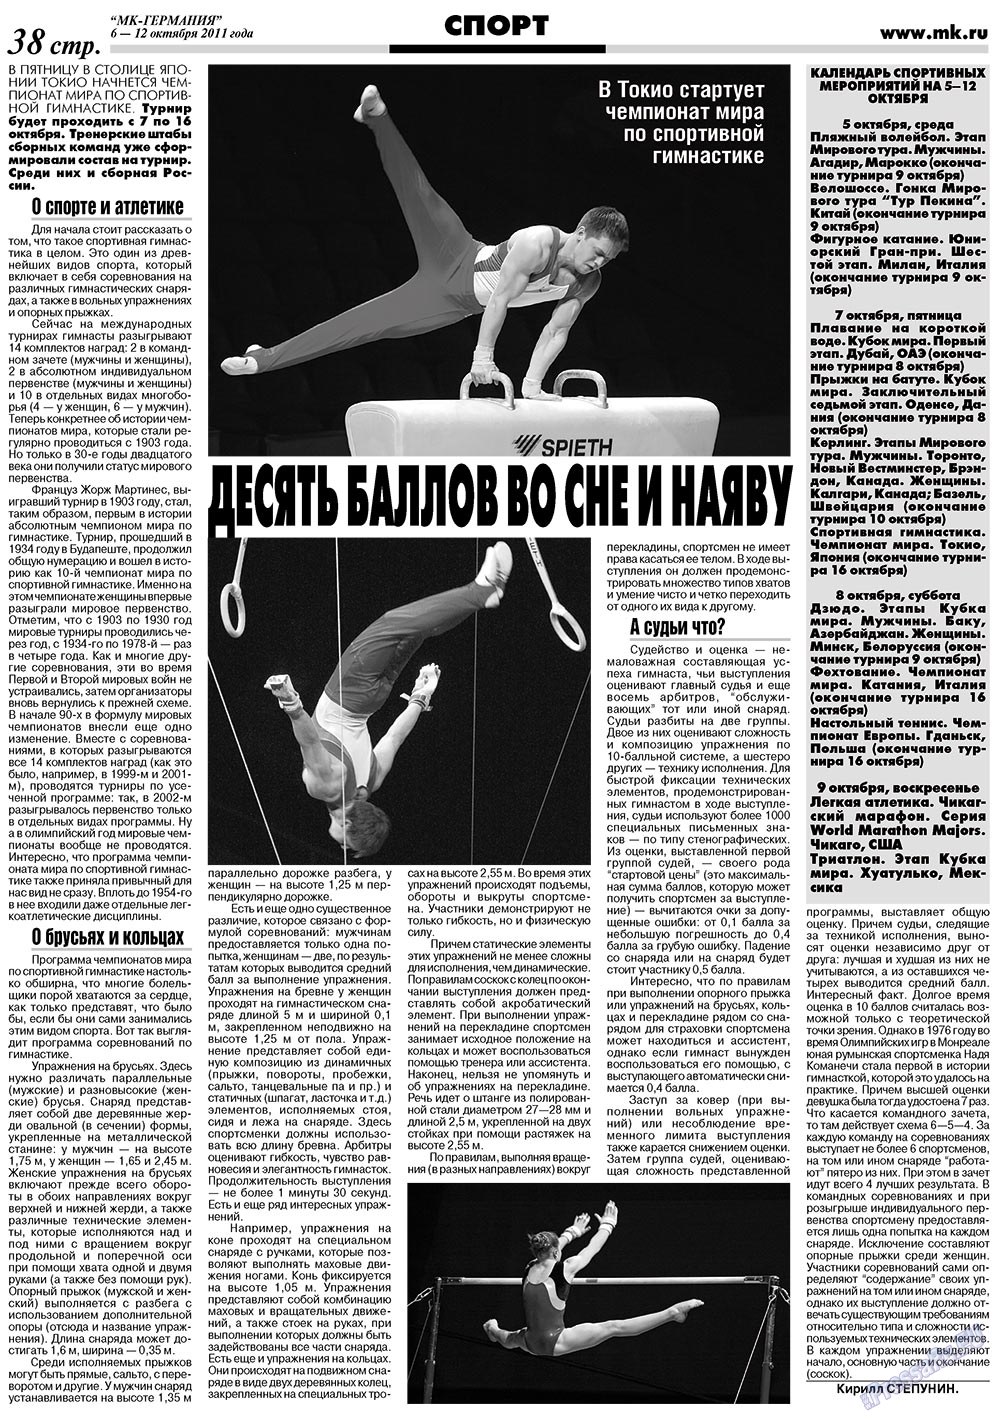 МК-Германия (газета). 2011 год, номер 40, стр. 38